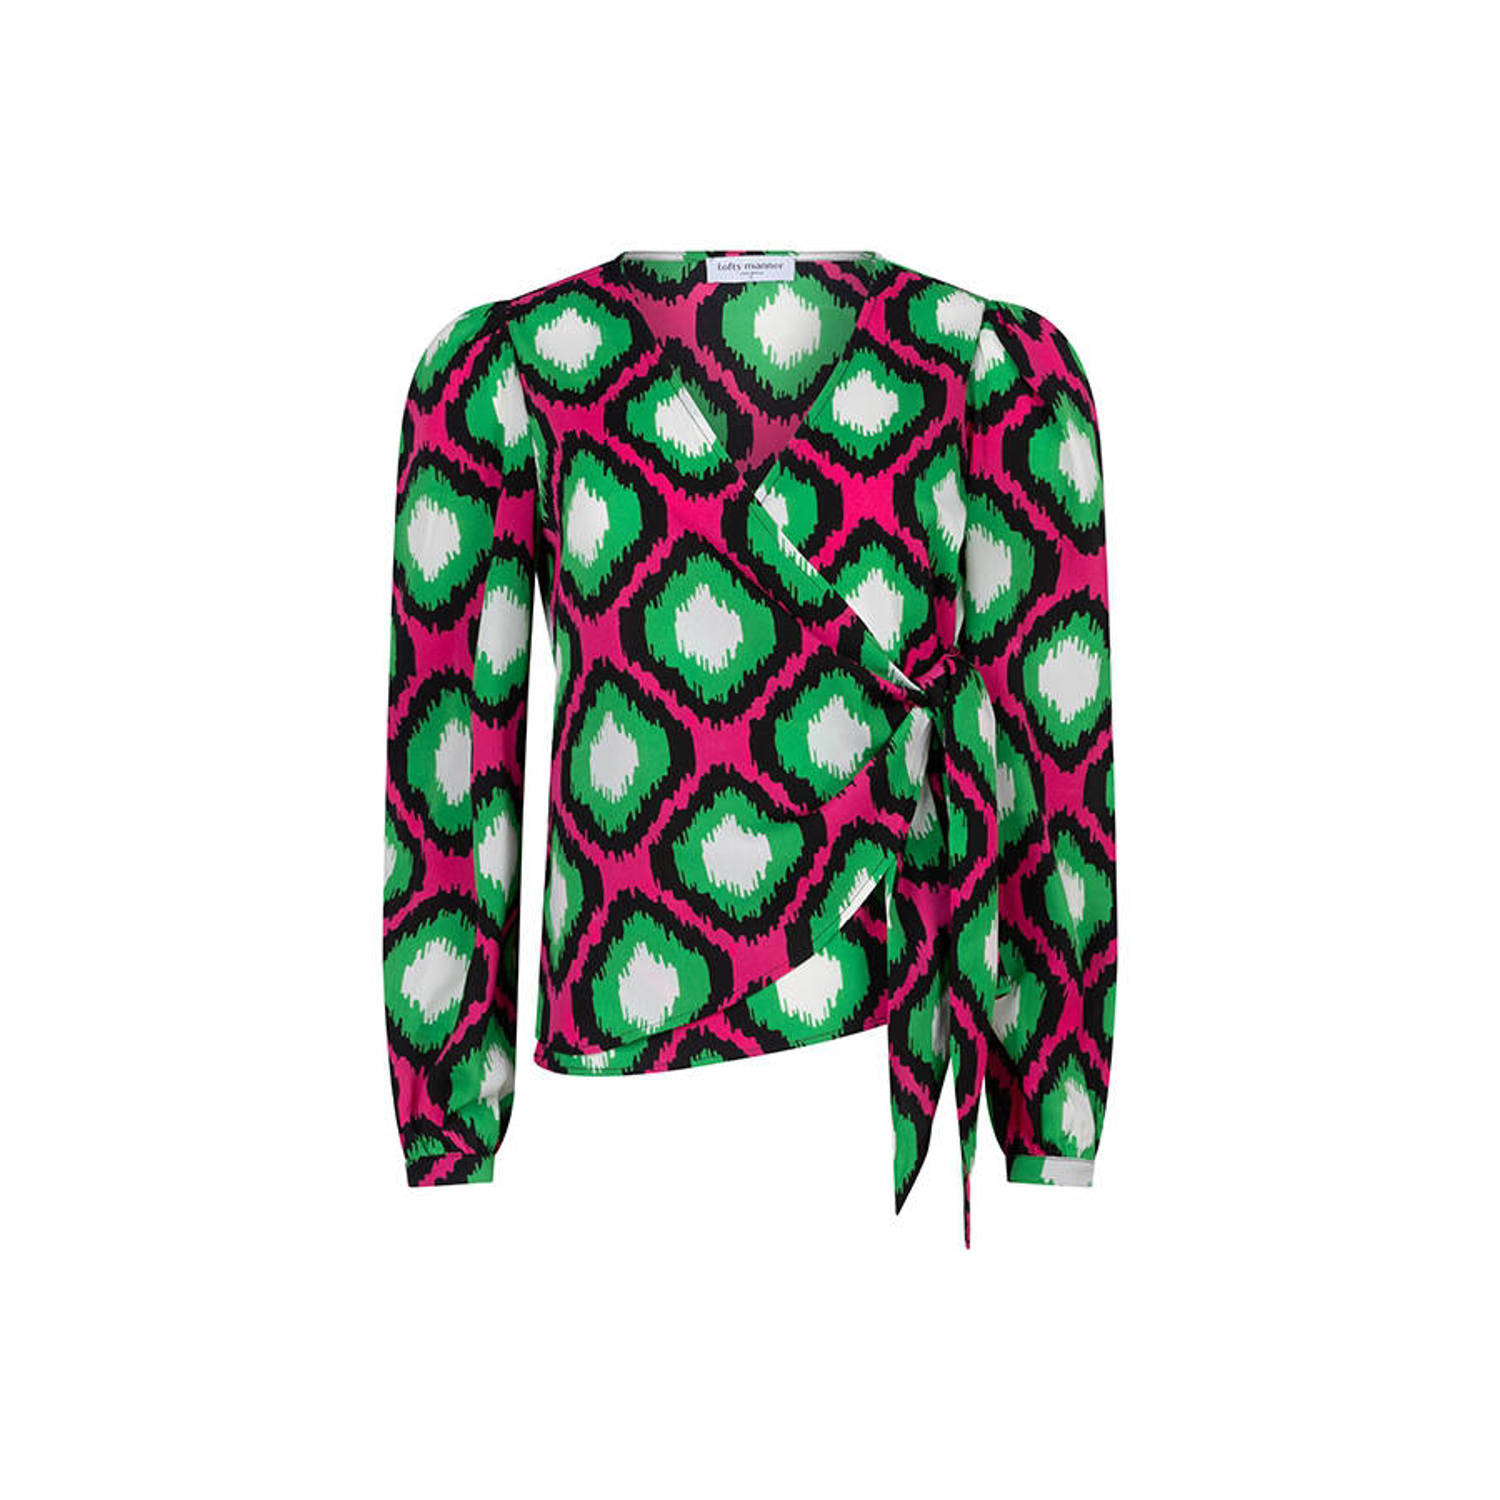 Lofty Manner overslag top Zaury met grafische print groen roze